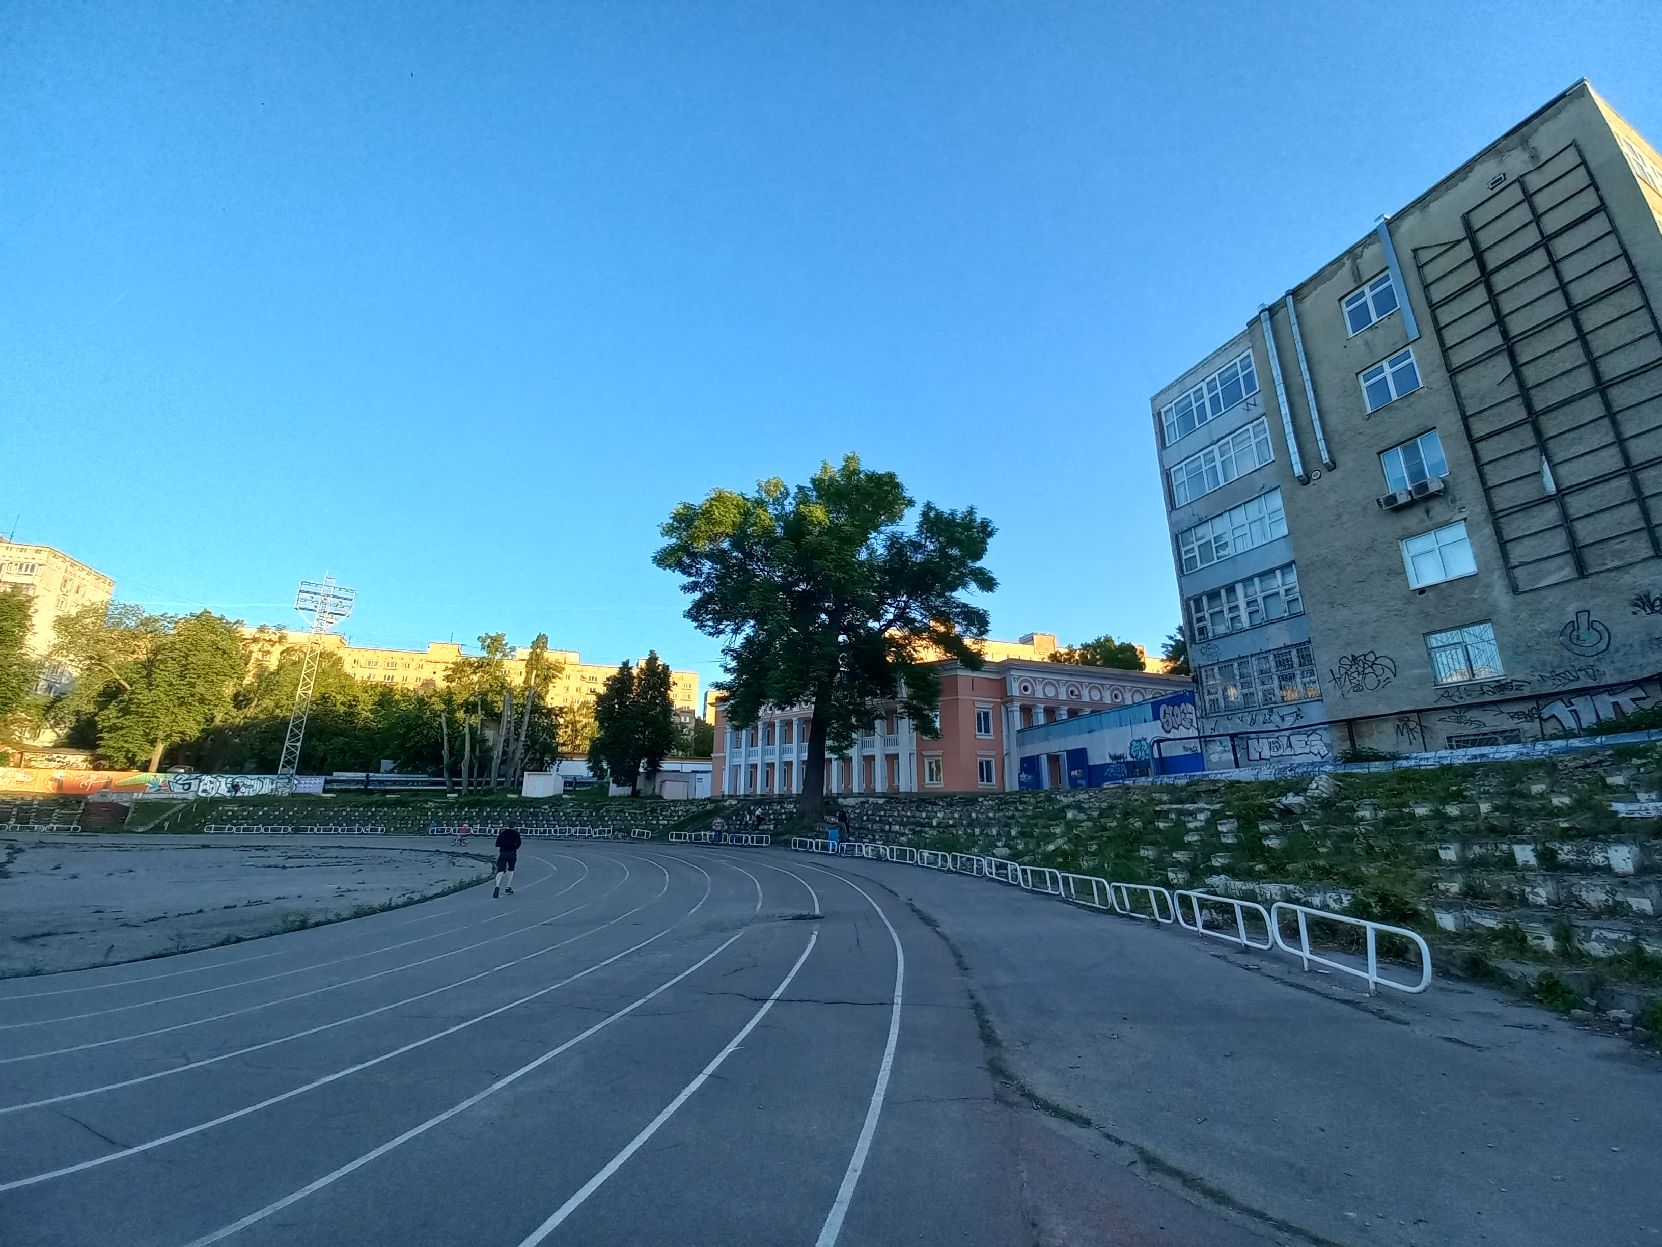 Времена былой славы: что ждет заброшенные стадионы Нижнего Новгорода?   - фото 3